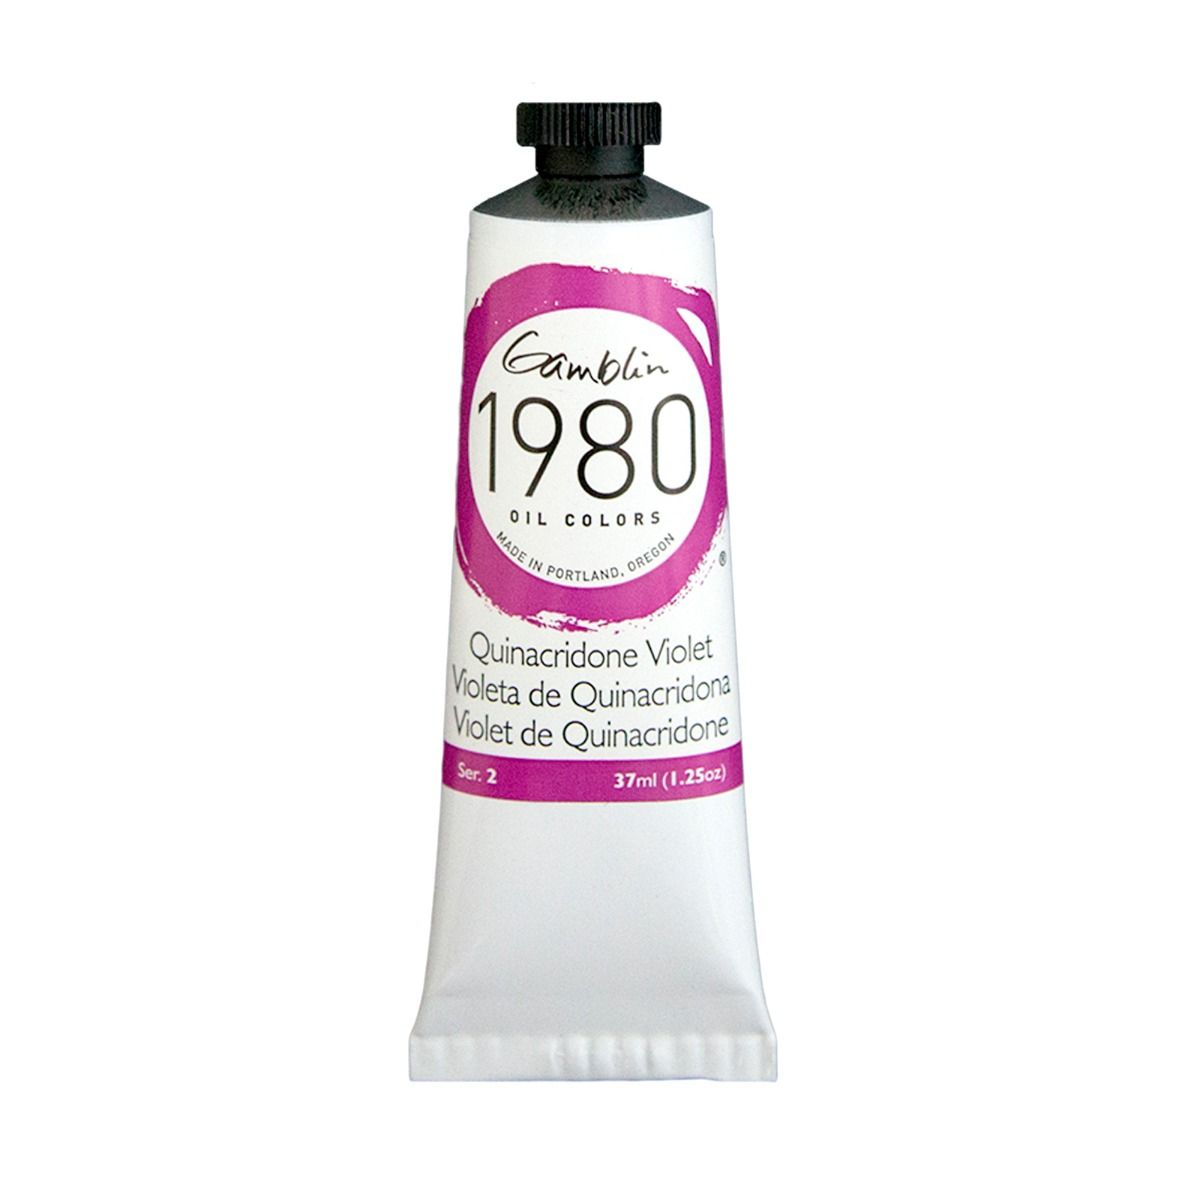 Gamblin 1980 Oils - Quinacridone Violet, 37 ml (1.25oz)
